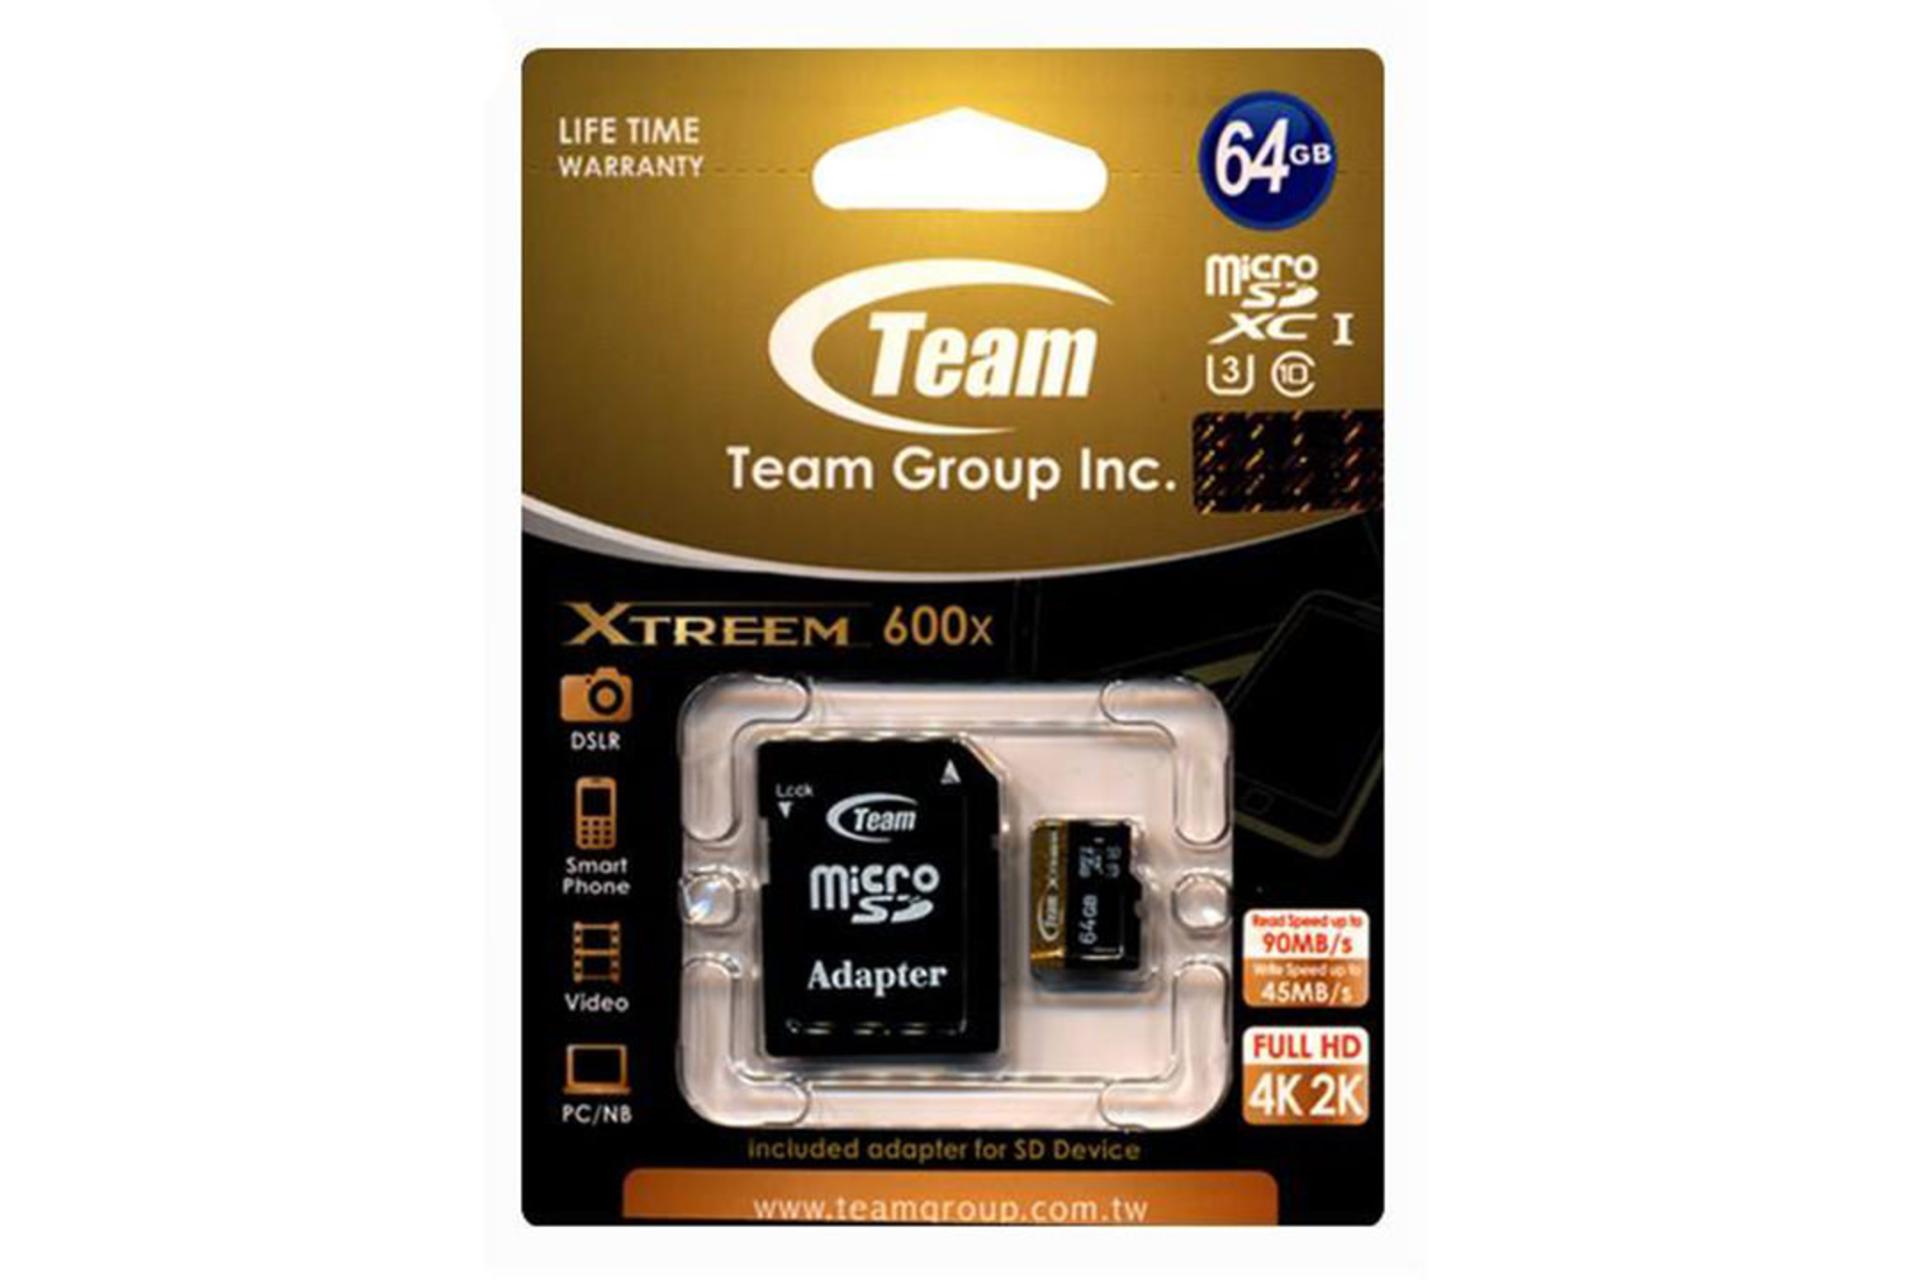 مرجع متخصصين ايران Team Group Xtreem microSDXC Class 10 UHS-I U3 64GB